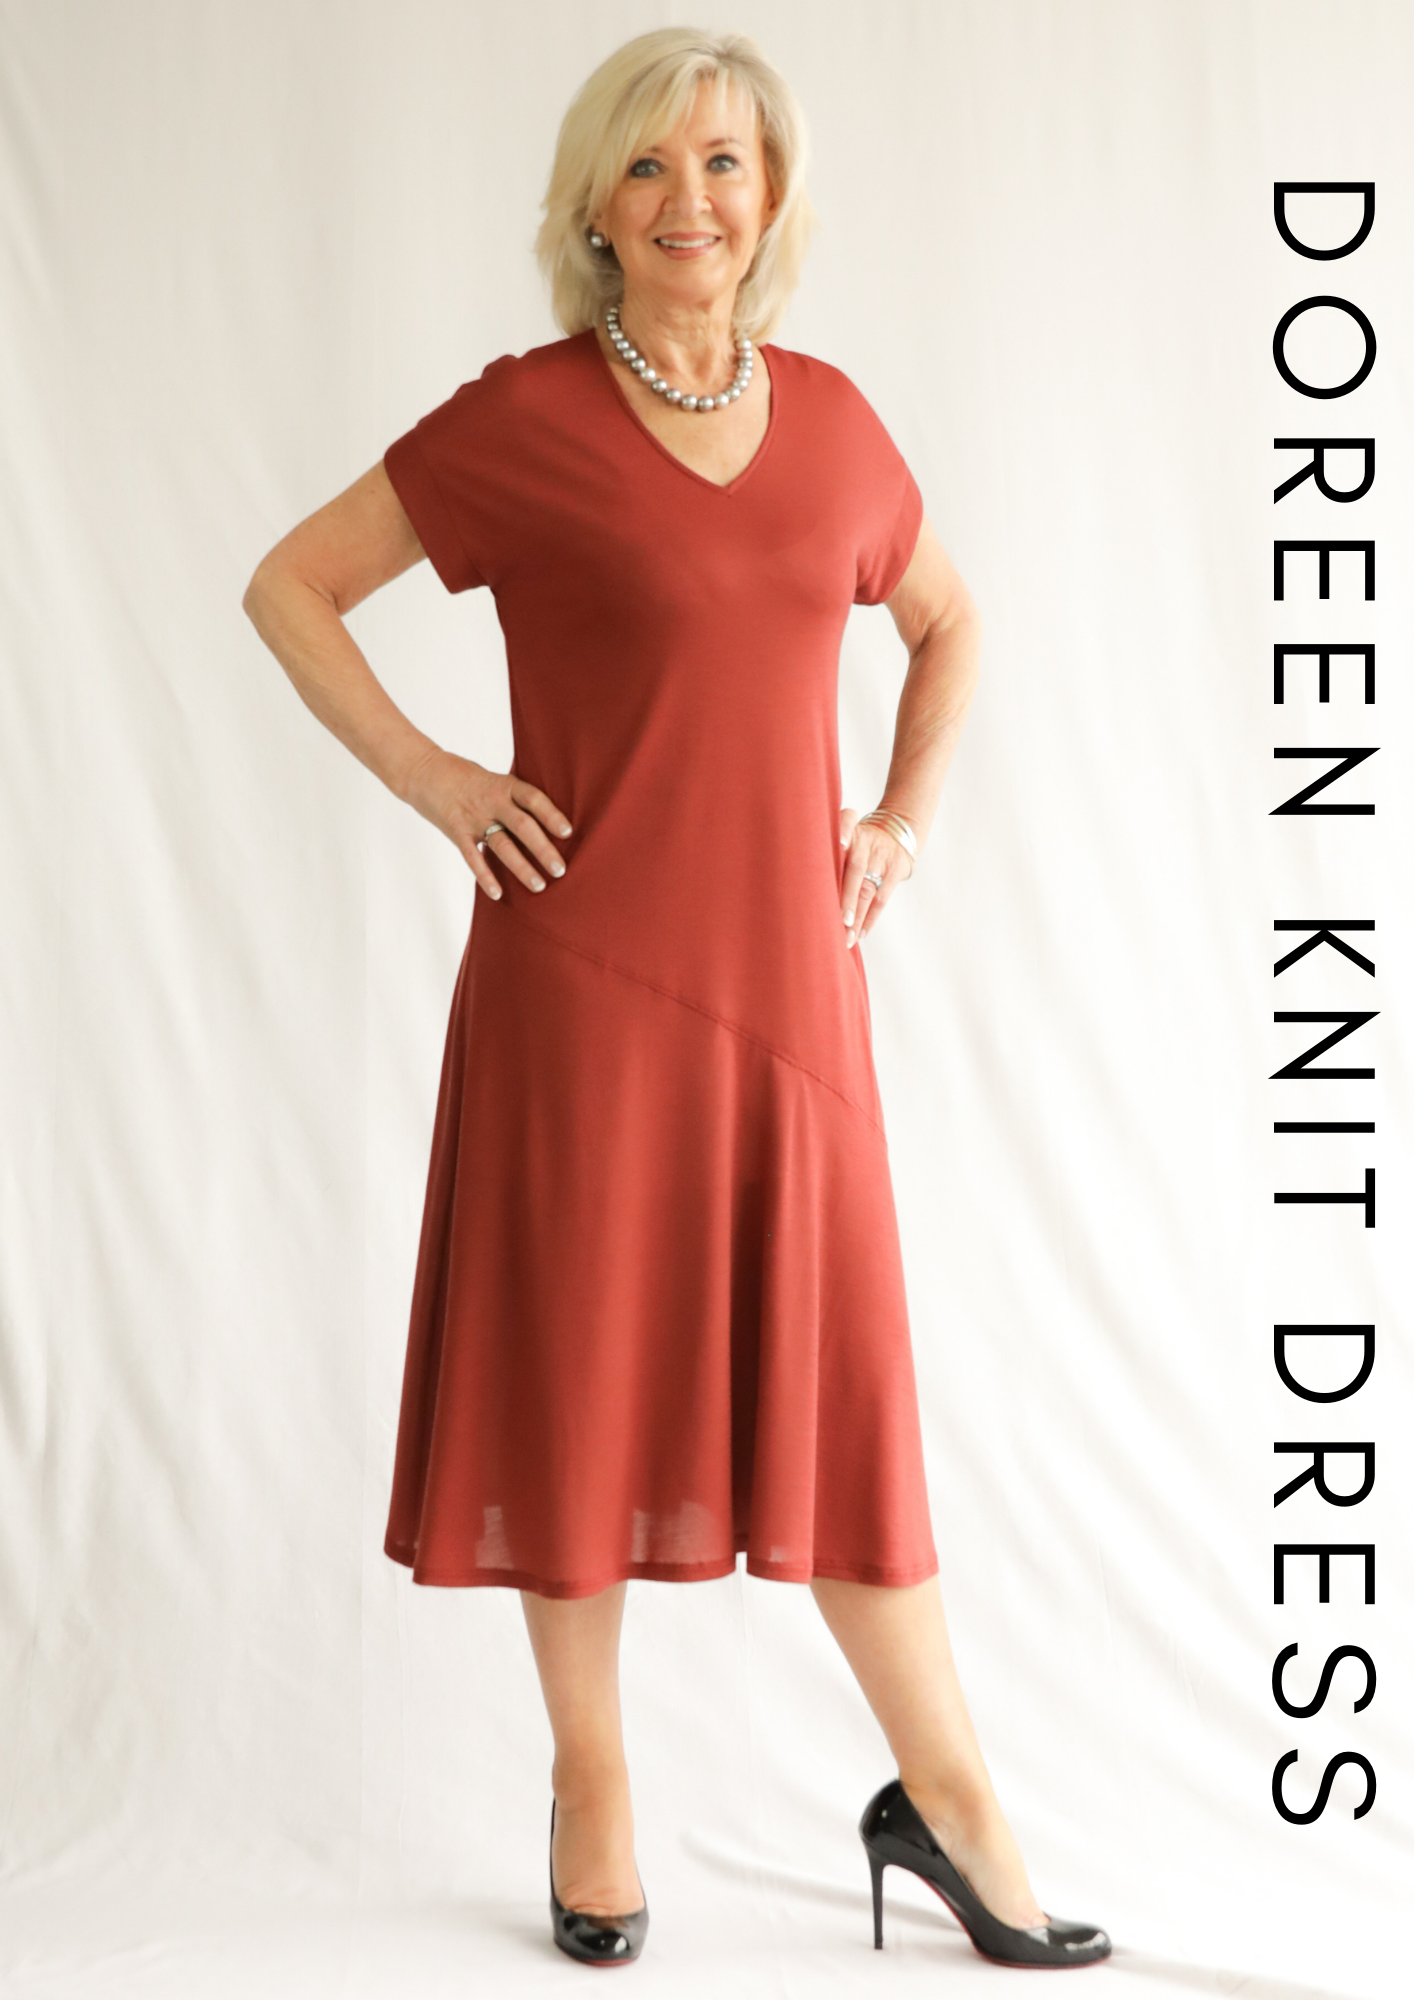 Doreen Knit Dress Bonus Pattern